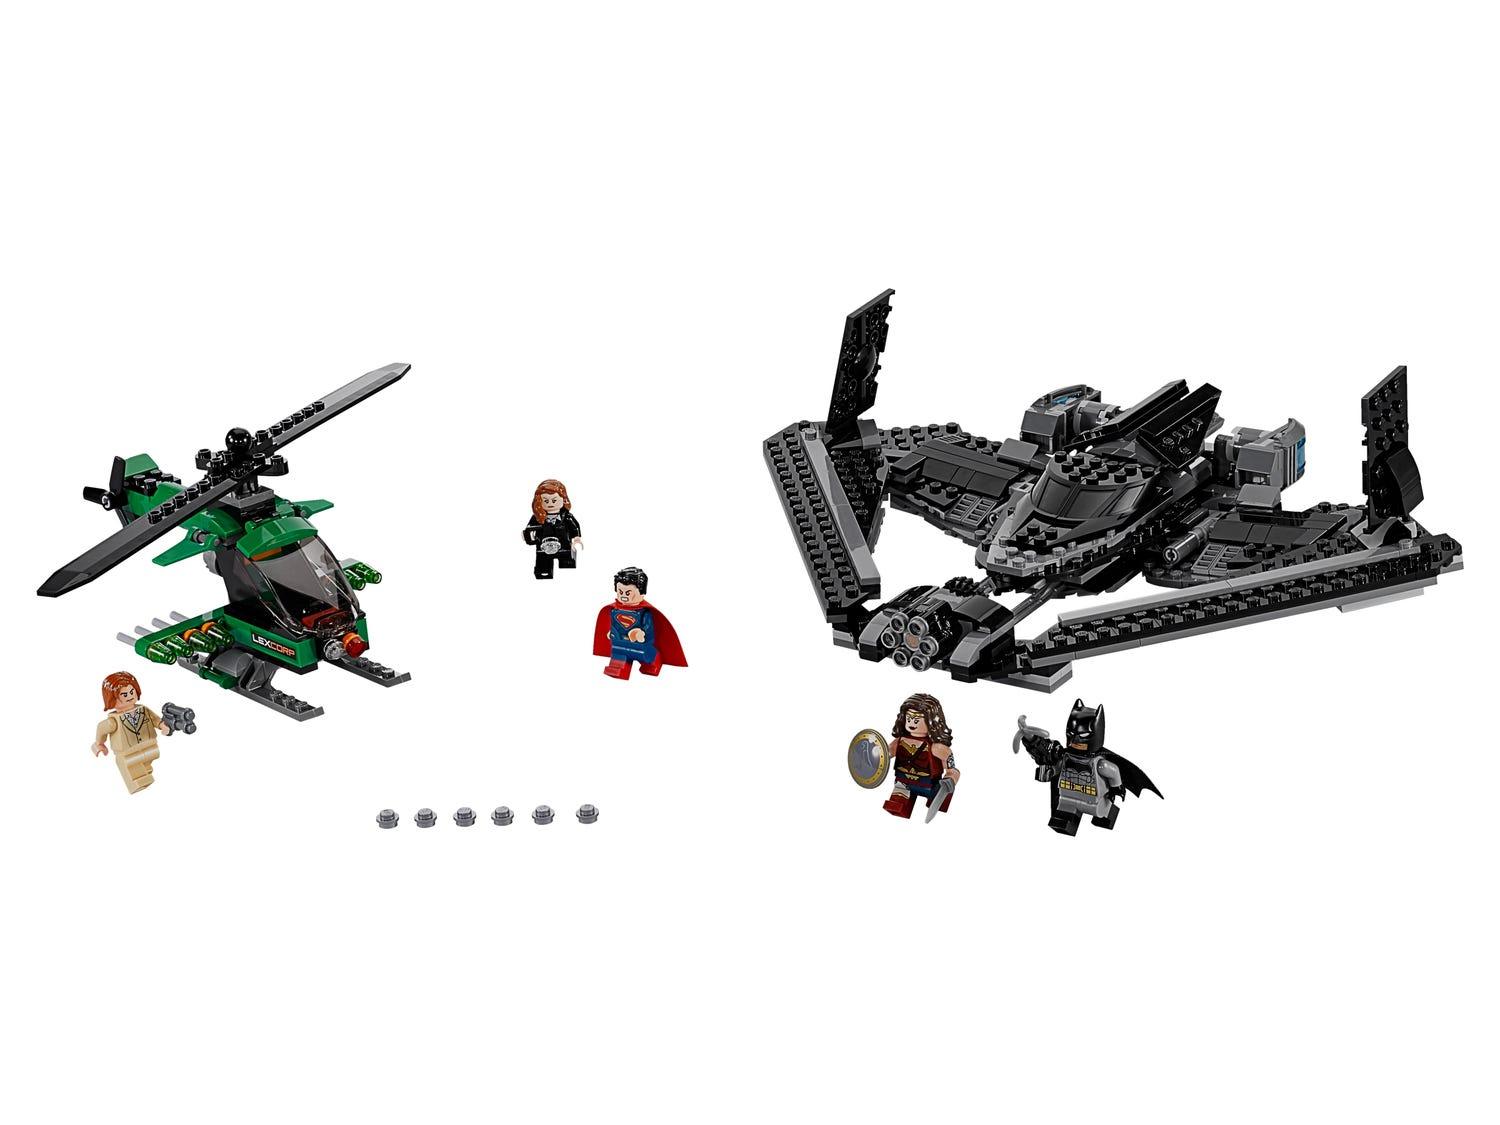 LEGO Heroes of Justice: Luchtduel 76046 Batman LEGO BATMAN @ 2TTOYS LEGO €. 71.99